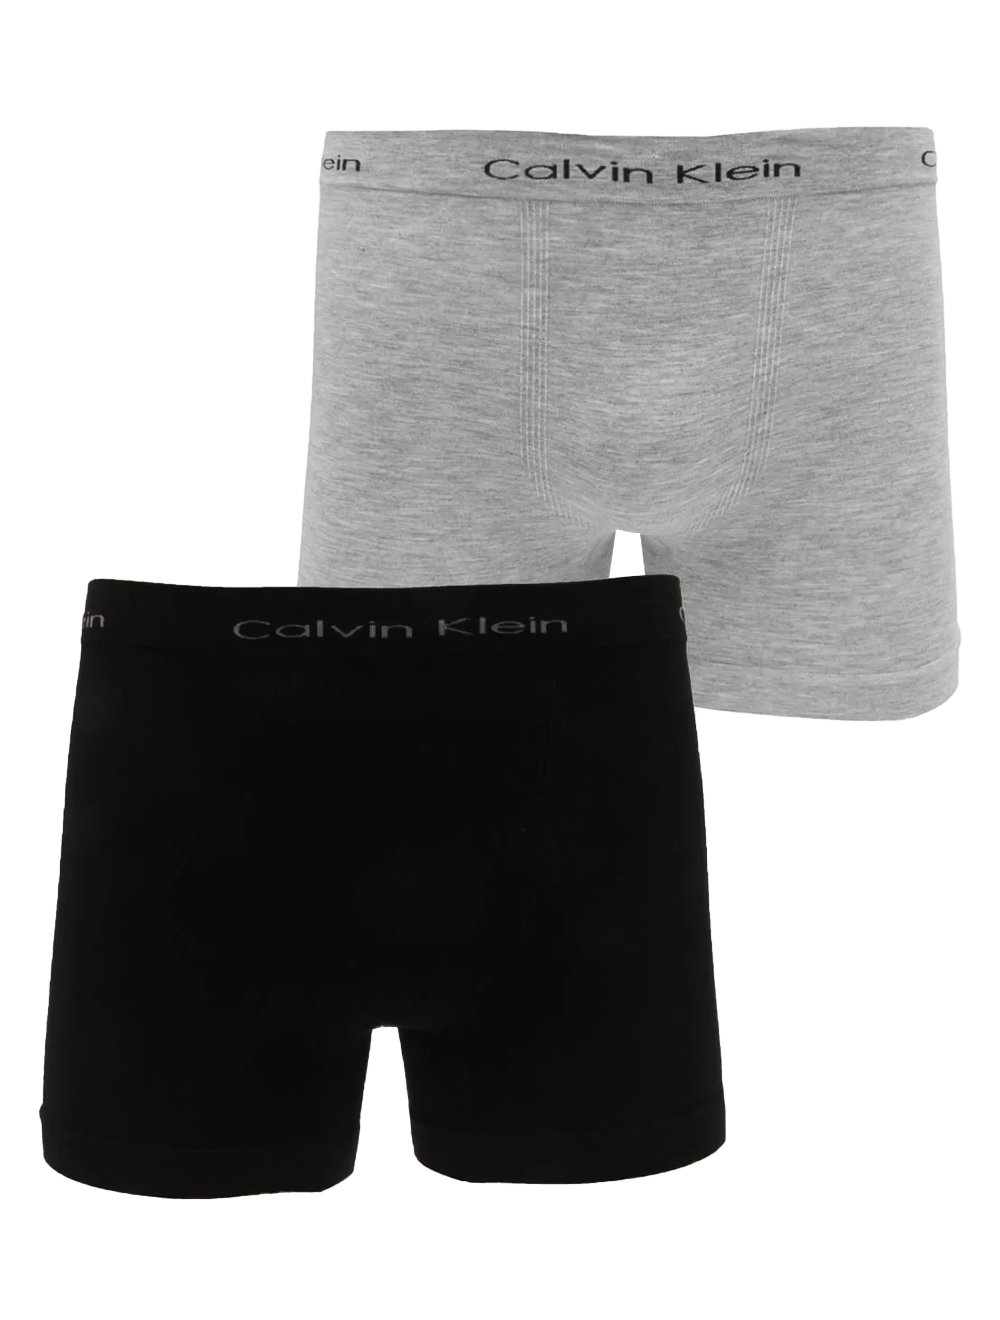 Cuecas Calvin Klein Trunk Micromodal Seamless Preta/Cinza Mescla Pack 2UN